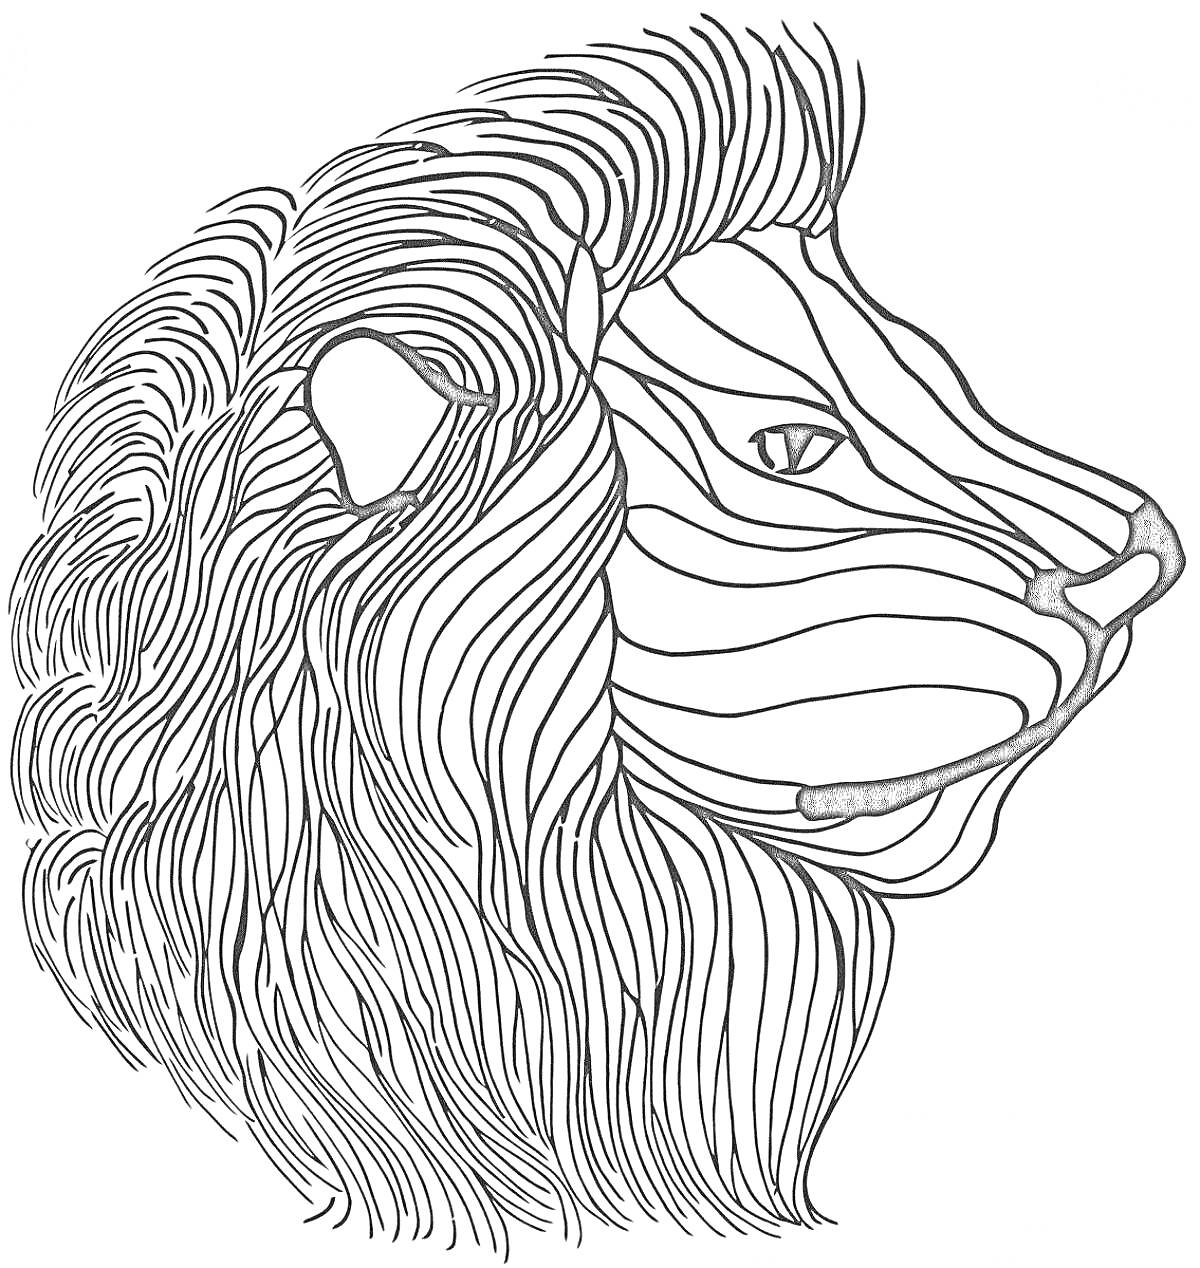 Раскраска Антистресс раскраска лев с узорами из линий